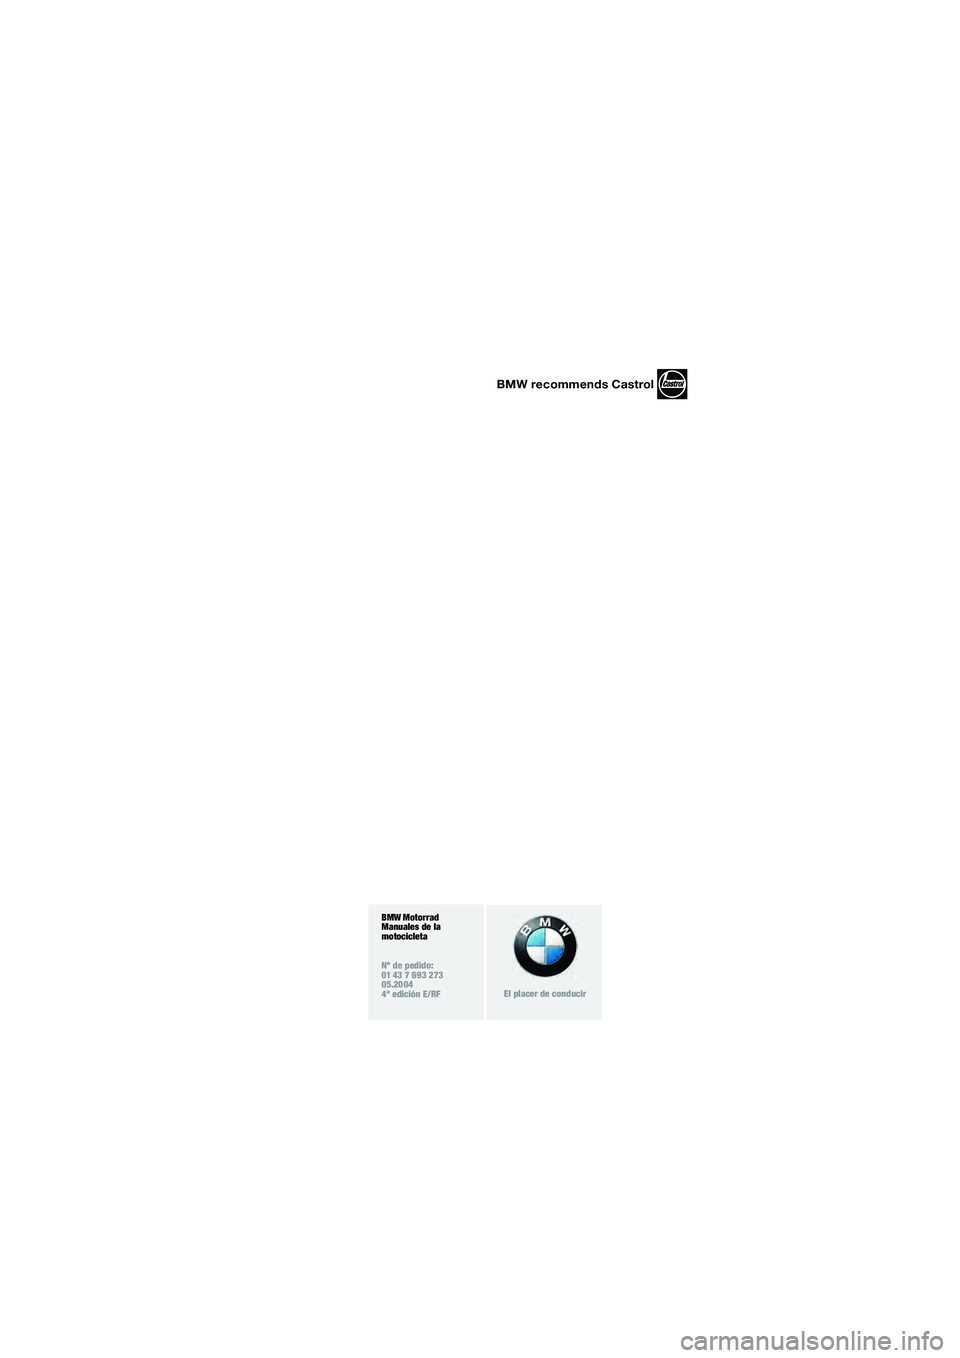 BMW MOTORRAD R 850 R 2004  Manual de instrucciones (in Spanish) BMW recommends Castrol
BMW Motorrad
Manuales de la 
motocicleta
Nº de pedido:
01 43 7 693 273
05.2004
4ª edición E/RF
El placer de conducir
10r28rue3.fm  Seite 3  Mittwoch, 26. Mai 2004  9:28 09 